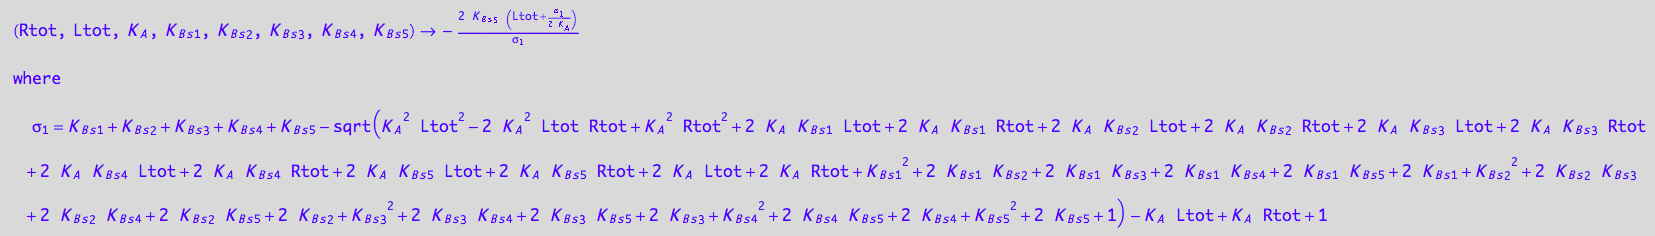 (Rtot, Ltot, K_A, K_B_s_1, K_B_s_2, K_B_s_3, K_B_s_4, K_B_s_5) -> -(2*K_B_s_5*(Ltot + (K_B_s_1 + K_B_s_2 + K_B_s_3 + K_B_s_4 + K_B_s_5 - (K_A^2*Ltot^2 - 2*K_A^2*Ltot*Rtot + K_A^2*Rtot^2 + 2*K_A*K_B_s_1*Ltot + 2*K_A*K_B_s_1*Rtot + 2*K_A*K_B_s_2*Ltot + 2*K_A*K_B_s_2*Rtot + 2*K_A*K_B_s_3*Ltot + 2*K_A*K_B_s_3*Rtot + 2*K_A*K_B_s_4*Ltot + 2*K_A*K_B_s_4*Rtot + 2*K_A*K_B_s_5*Ltot + 2*K_A*K_B_s_5*Rtot + 2*K_A*Ltot + 2*K_A*Rtot + K_B_s_1^2 + 2*K_B_s_1*K_B_s_2 + 2*K_B_s_1*K_B_s_3 + 2*K_B_s_1*K_B_s_4 + 2*K_B_s_1*K_B_s_5 + 2*K_B_s_1 + K_B_s_2^2 + 2*K_B_s_2*K_B_s_3 + 2*K_B_s_2*K_B_s_4 + 2*K_B_s_2*K_B_s_5 + 2*K_B_s_2 + K_B_s_3^2 + 2*K_B_s_3*K_B_s_4 + 2*K_B_s_3*K_B_s_5 + 2*K_B_s_3 + K_B_s_4^2 + 2*K_B_s_4*K_B_s_5 + 2*K_B_s_4 + K_B_s_5^2 + 2*K_B_s_5 + 1)^(1/2) - K_A*Ltot + K_A*Rtot + 1)/(2*K_A)))/(K_B_s_1 + K_B_s_2 + K_B_s_3 + K_B_s_4 + K_B_s_5 - (K_A^2*Ltot^2 - 2*K_A^2*Ltot*Rtot + K_A^2*Rtot^2 + 2*K_A*K_B_s_1*Ltot + 2*K_A*K_B_s_1*Rtot + 2*K_A*K_B_s_2*Ltot + 2*K_A*K_B_s_2*Rtot + 2*K_A*K_B_s_3*Ltot + 2*K_A*K_B_s_3*Rtot + 2*K_A*K_B_s_4*Ltot + 2*K_A*K_B_s_4*Rtot + 2*K_A*K_B_s_5*Ltot + 2*K_A*K_B_s_5*Rtot + 2*K_A*Ltot + 2*K_A*Rtot + K_B_s_1^2 + 2*K_B_s_1*K_B_s_2 + 2*K_B_s_1*K_B_s_3 + 2*K_B_s_1*K_B_s_4 + 2*K_B_s_1*K_B_s_5 + 2*K_B_s_1 + K_B_s_2^2 + 2*K_B_s_2*K_B_s_3 + 2*K_B_s_2*K_B_s_4 + 2*K_B_s_2*K_B_s_5 + 2*K_B_s_2 + K_B_s_3^2 + 2*K_B_s_3*K_B_s_4 + 2*K_B_s_3*K_B_s_5 + 2*K_B_s_3 + K_B_s_4^2 + 2*K_B_s_4*K_B_s_5 + 2*K_B_s_4 + K_B_s_5^2 + 2*K_B_s_5 + 1)^(1/2) - K_A*Ltot + K_A*Rtot + 1)